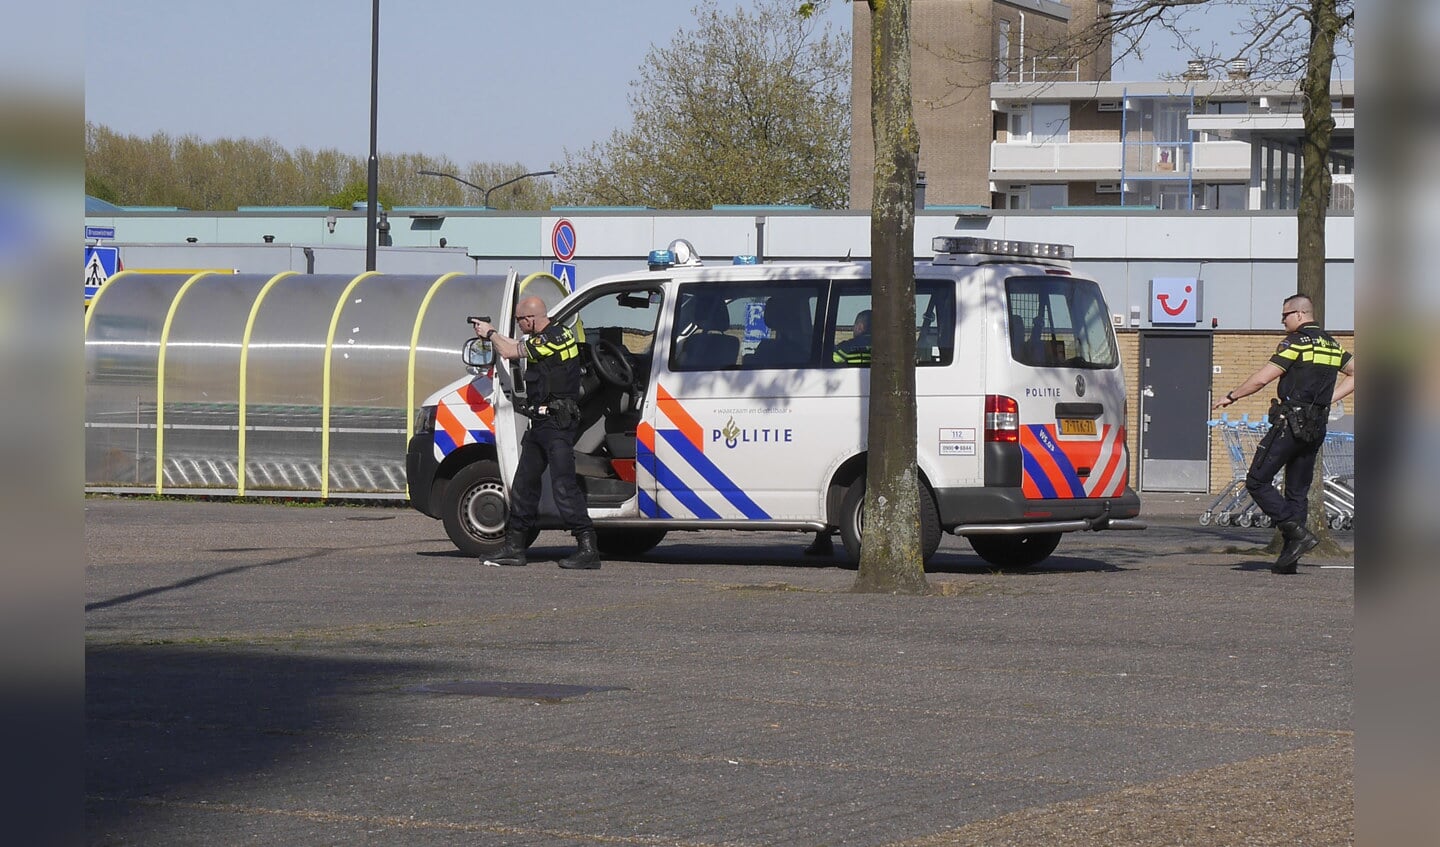 Bij Winkelcentrum Hoge Vucht zijn donderdag 5 mei drie mannen aangehouden. Ze worden verdacht van betrokkenheid bij een dodelijke schietpartij in Dordrecht.